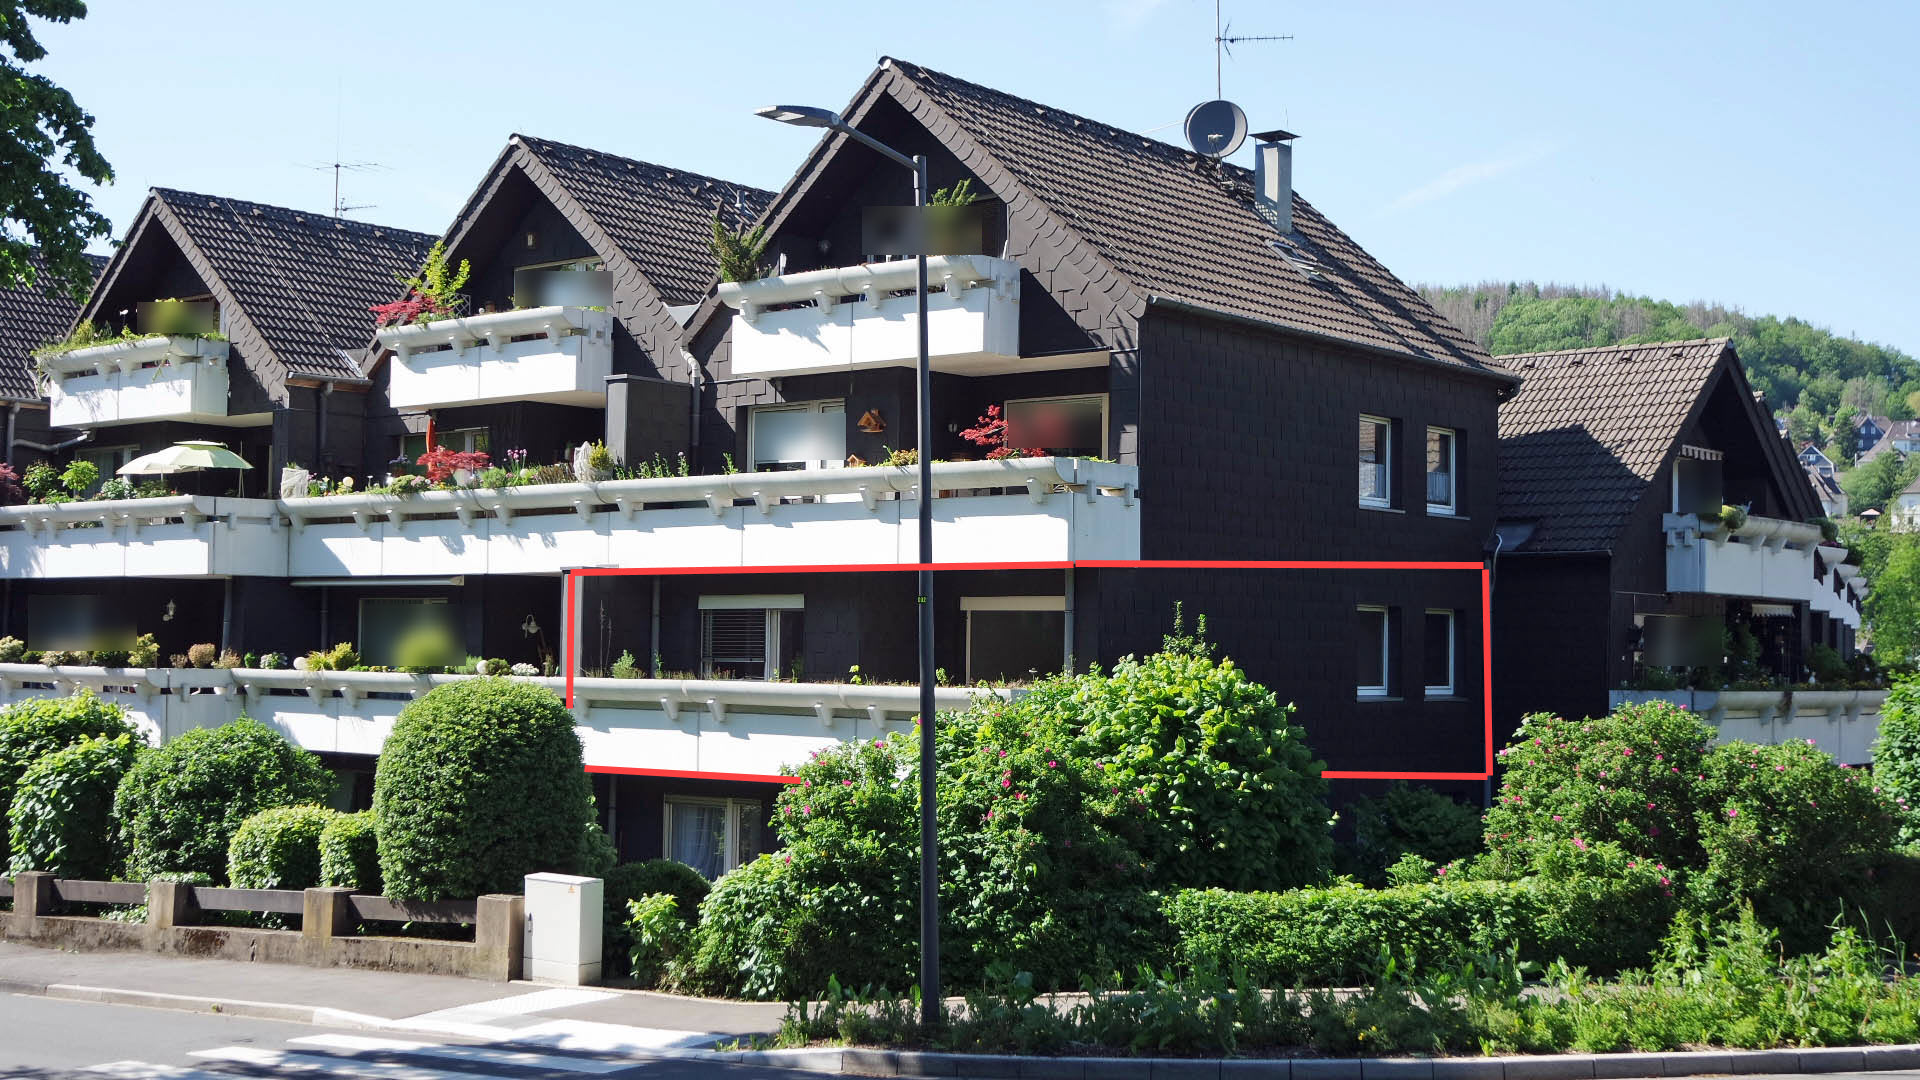 204 2-245 - GM-Dieringhausen: ETW mit 16 m² großem Balkon